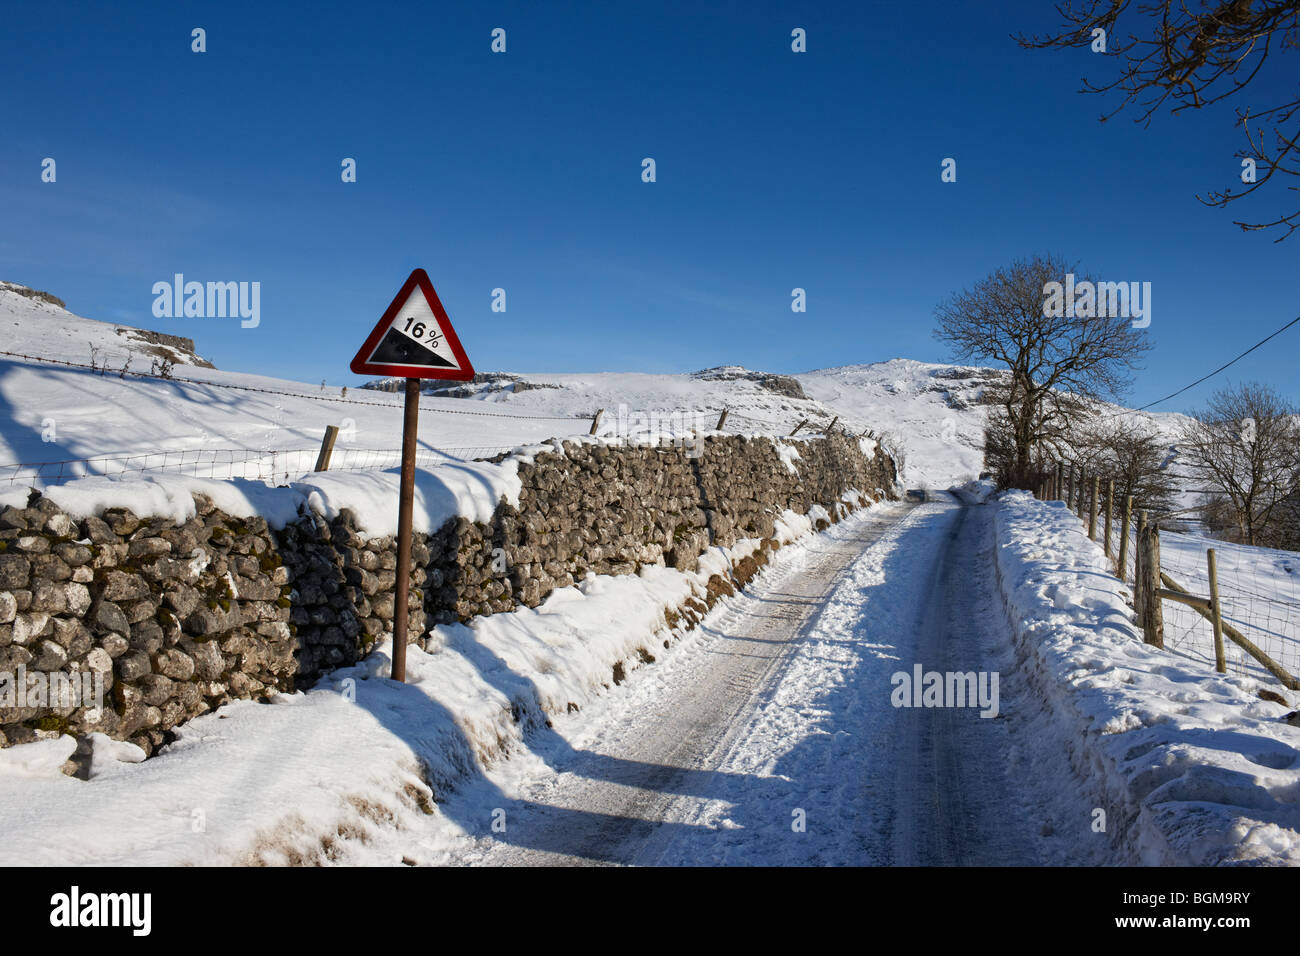 Eine eisige, schneebedeckte Straße mit 16 % Steigung Warnzeichen Stockfoto